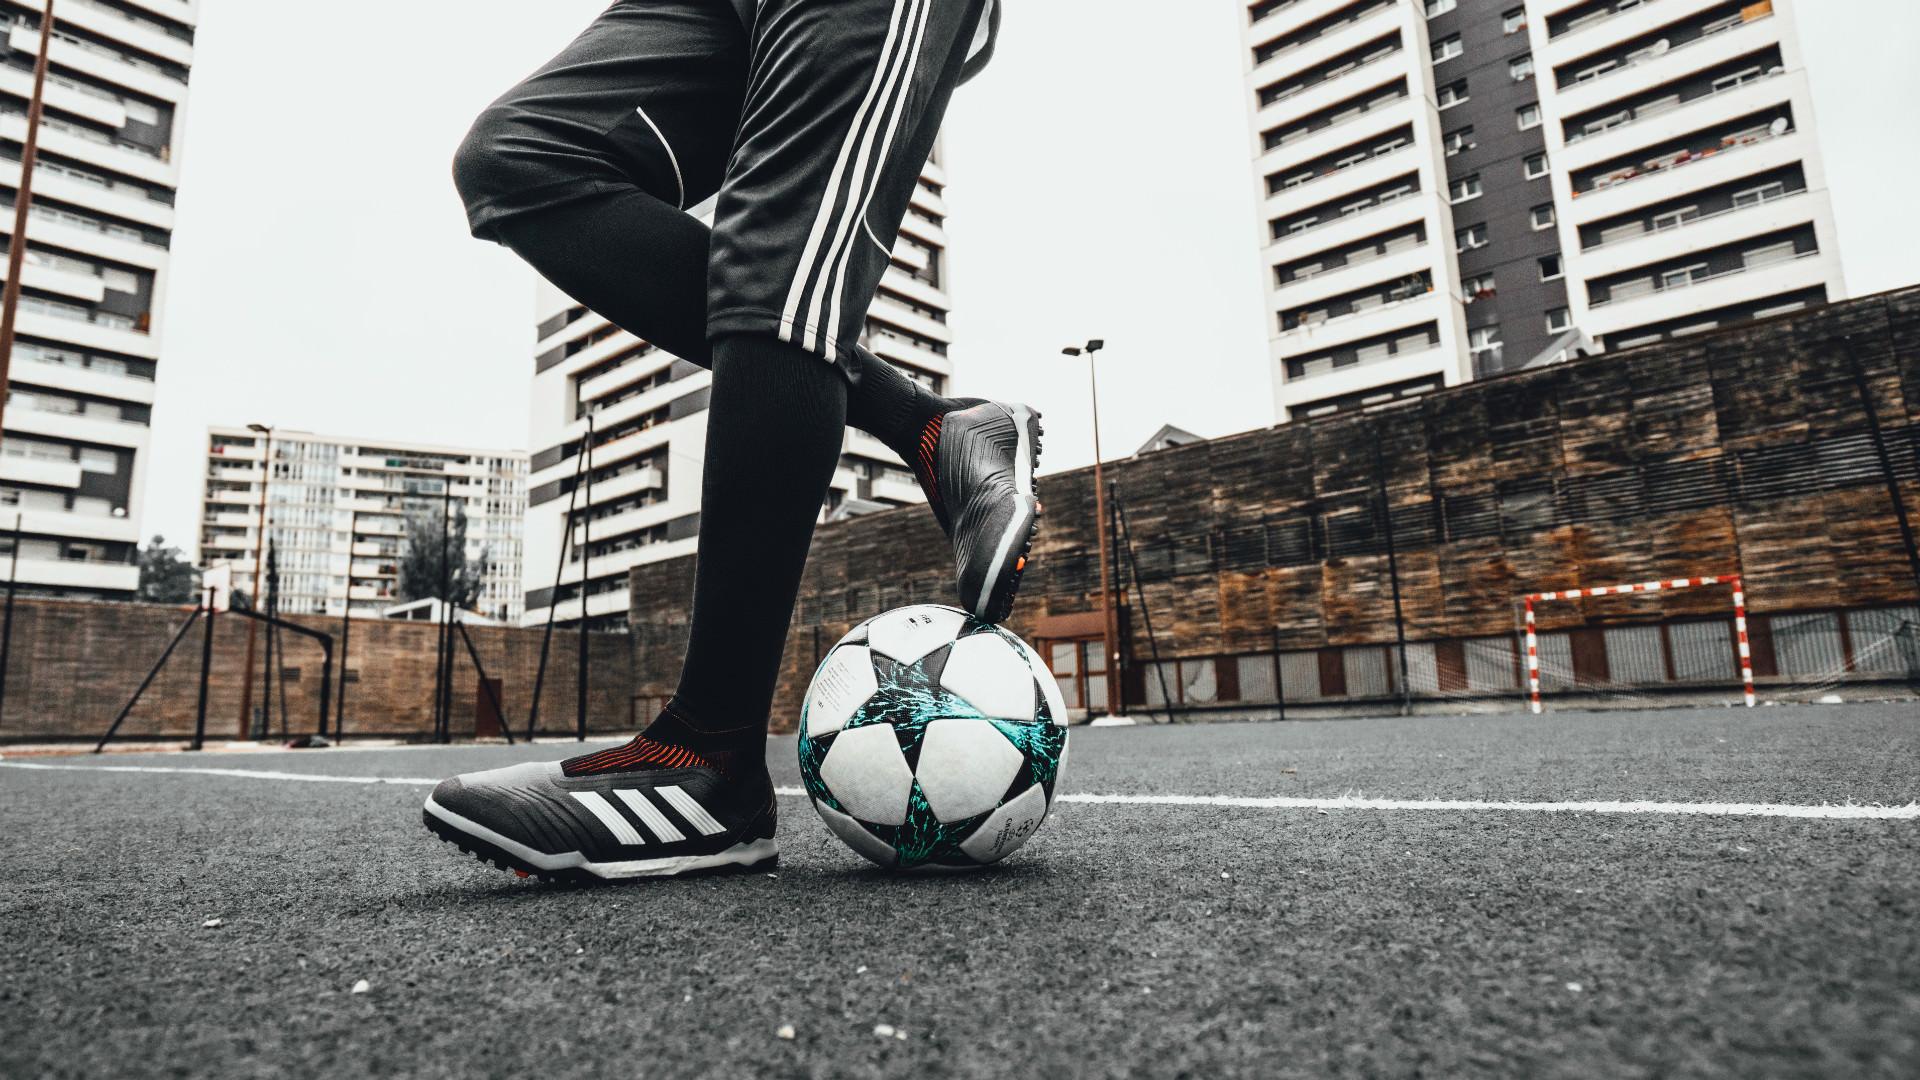 Adidas Predator Soccer Shoes Football Australia.com 2018